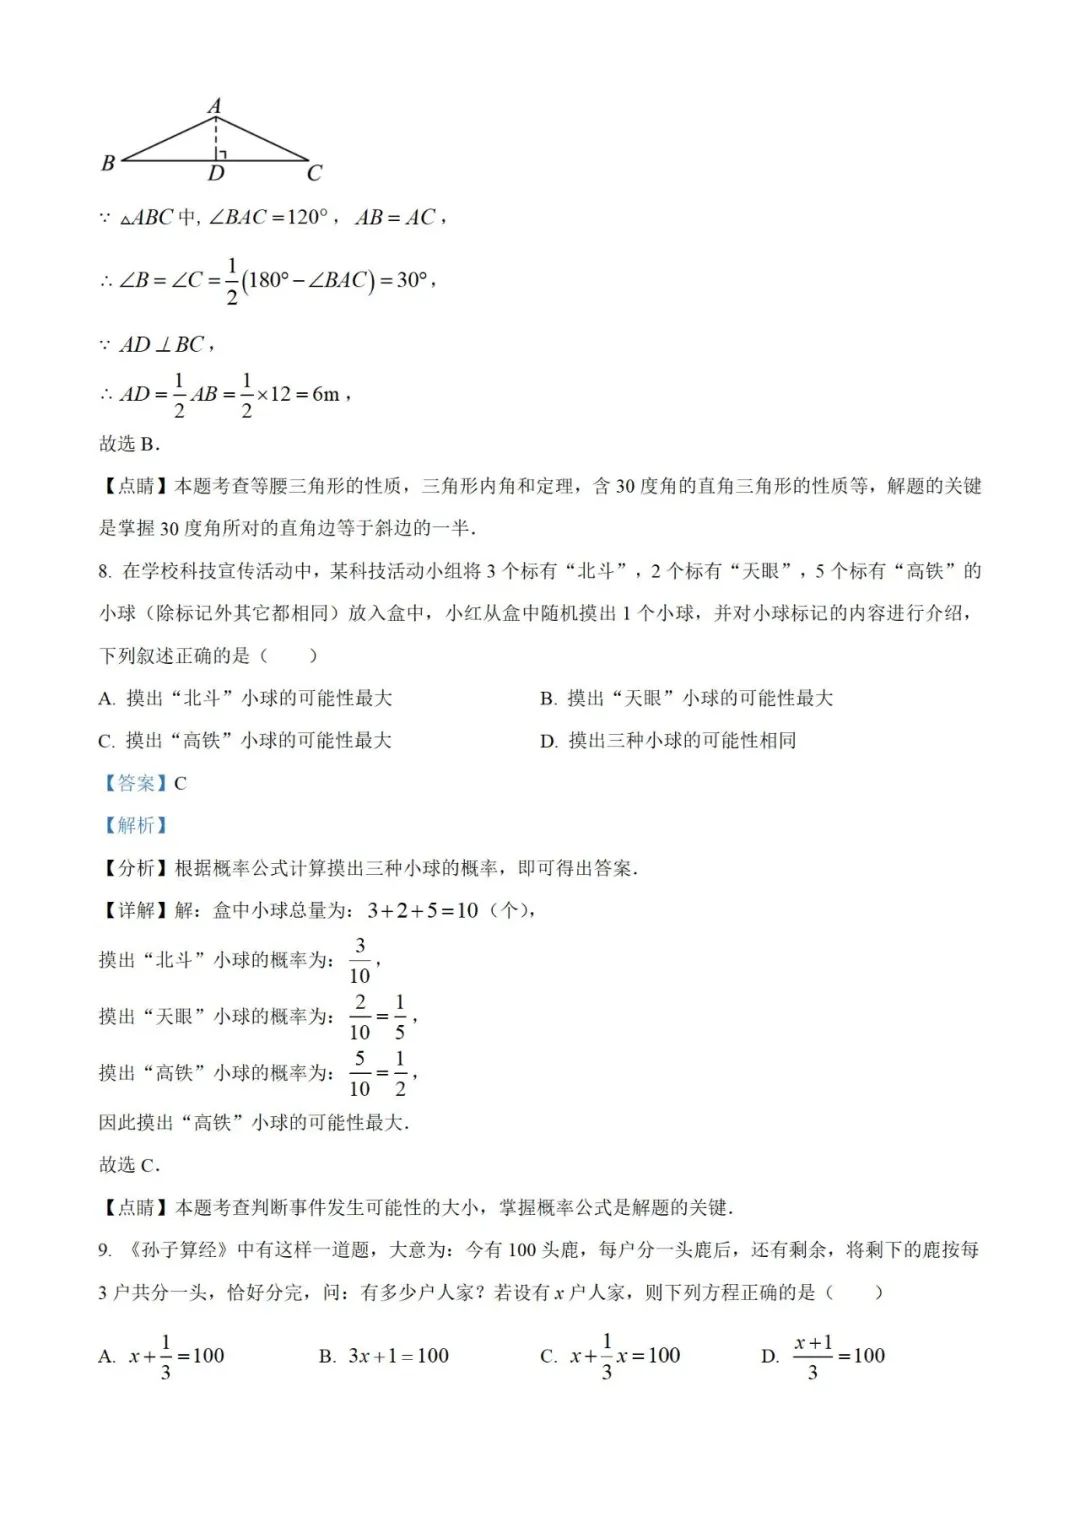 【中考真题】2023年贵州省中考数学真题 (带答案解析) 第12张